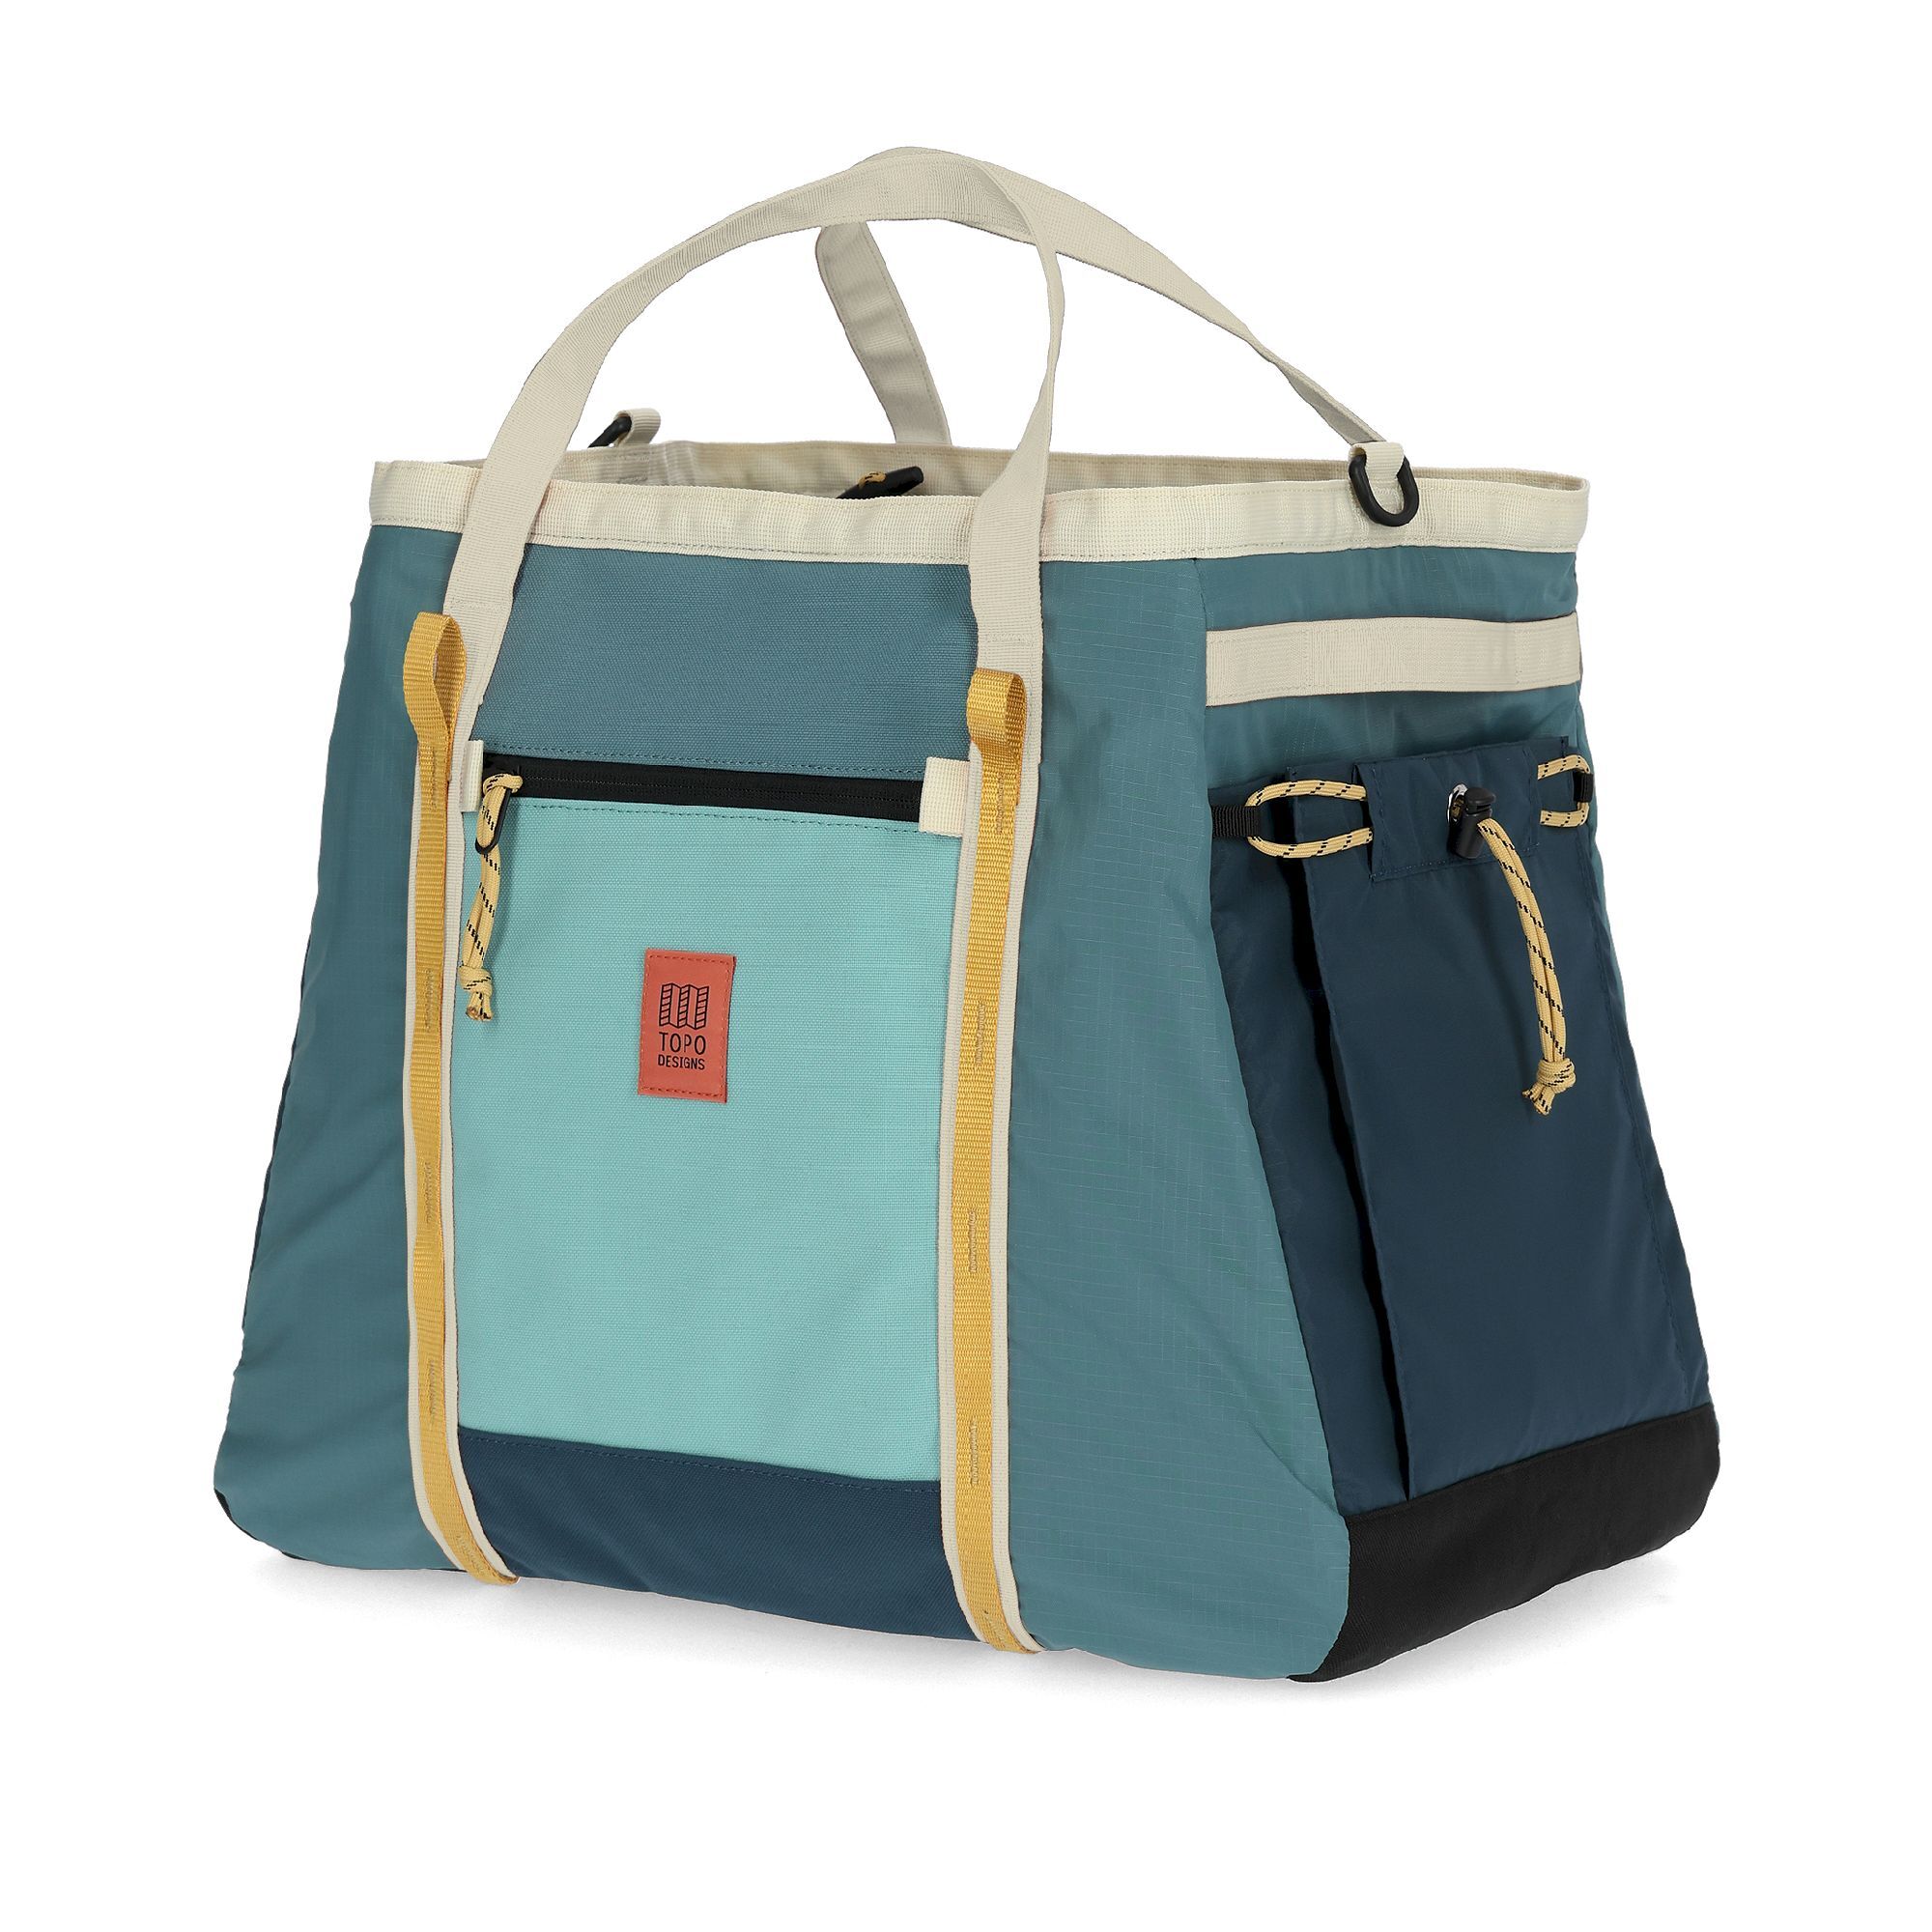 Topo Designs Mountain Gear Bag - Travel bag